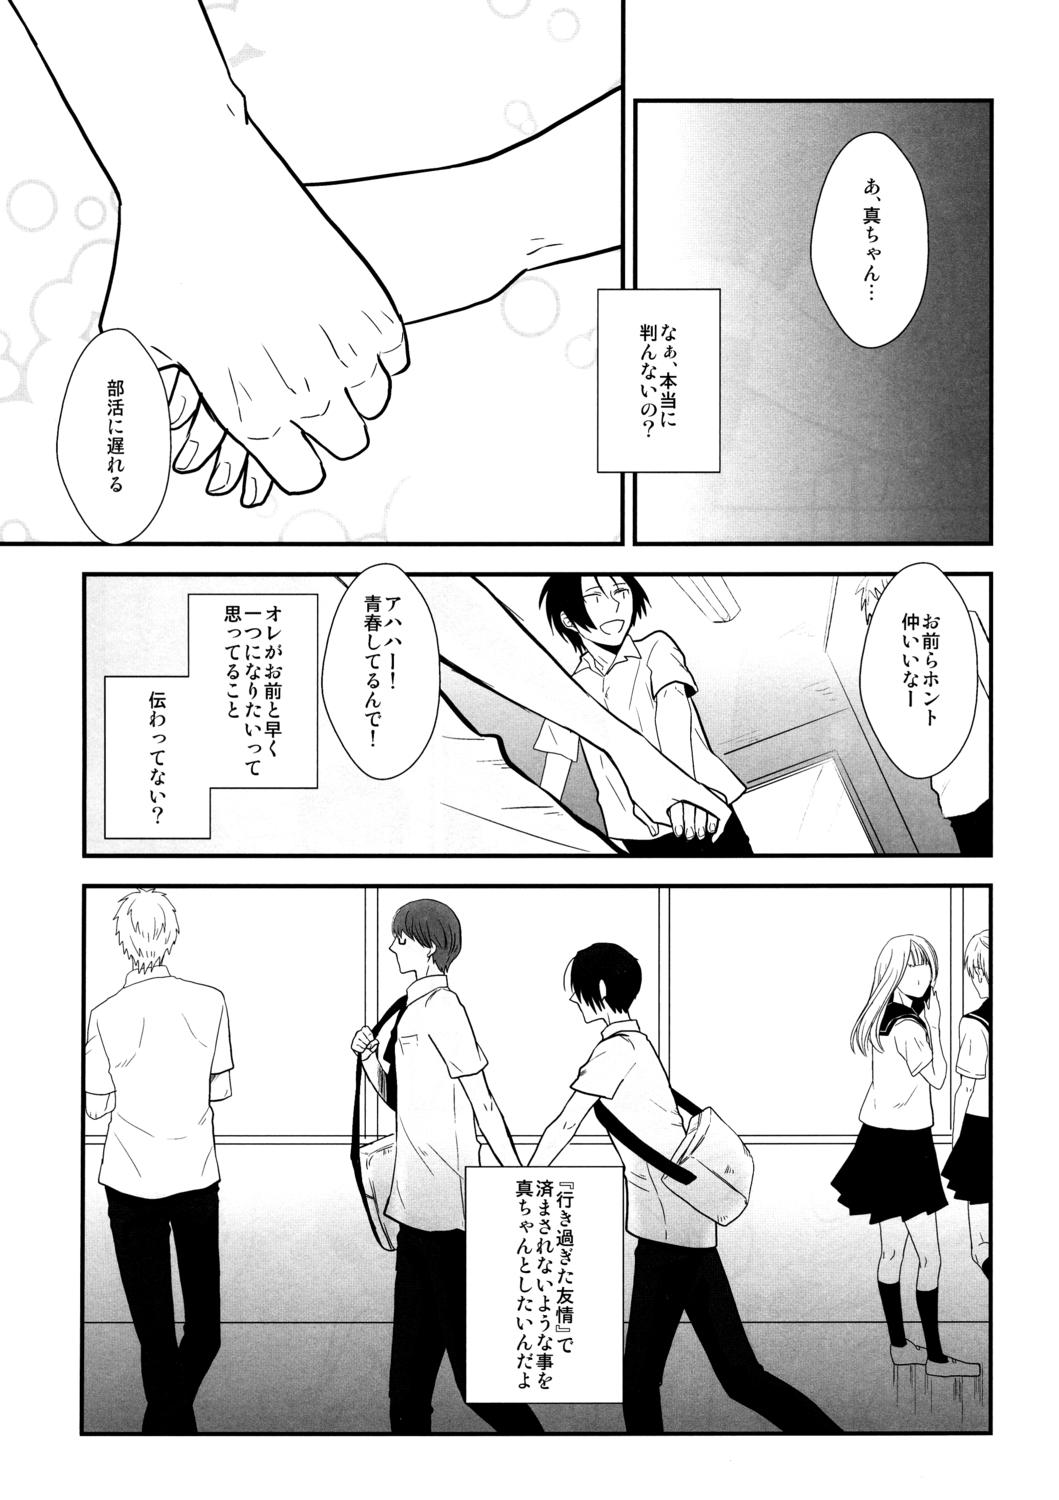 Foot Job Kimi to HEAVEN - Kuroko no basuke Muslim - Page 4